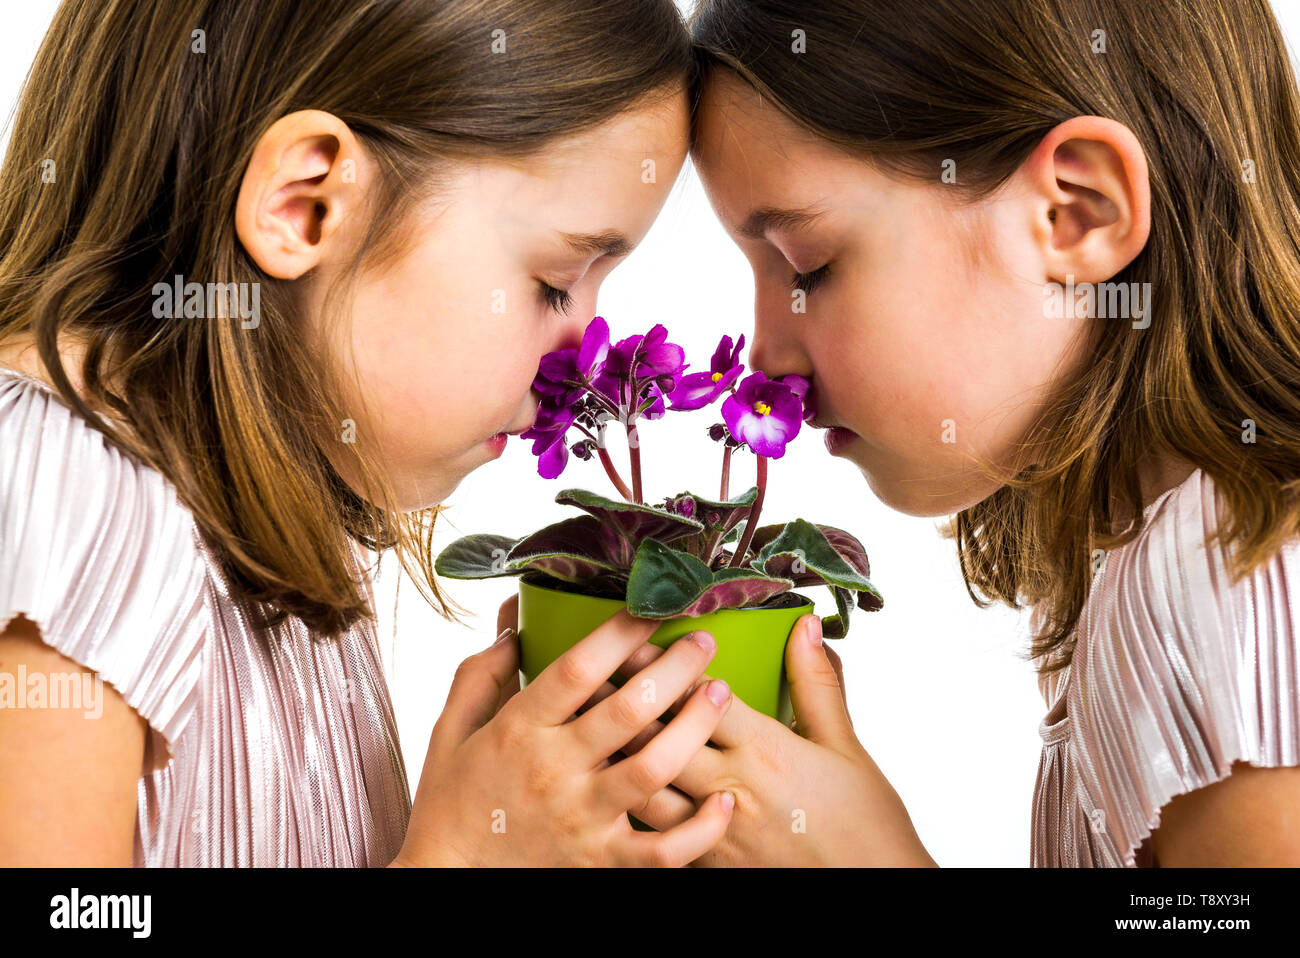 Chica gemelas son olorosas flores viola green pot. Niñas niños lloran con los ojos cerrados. Concepto de duelo la pérdida de seres queridos. Foto de stock